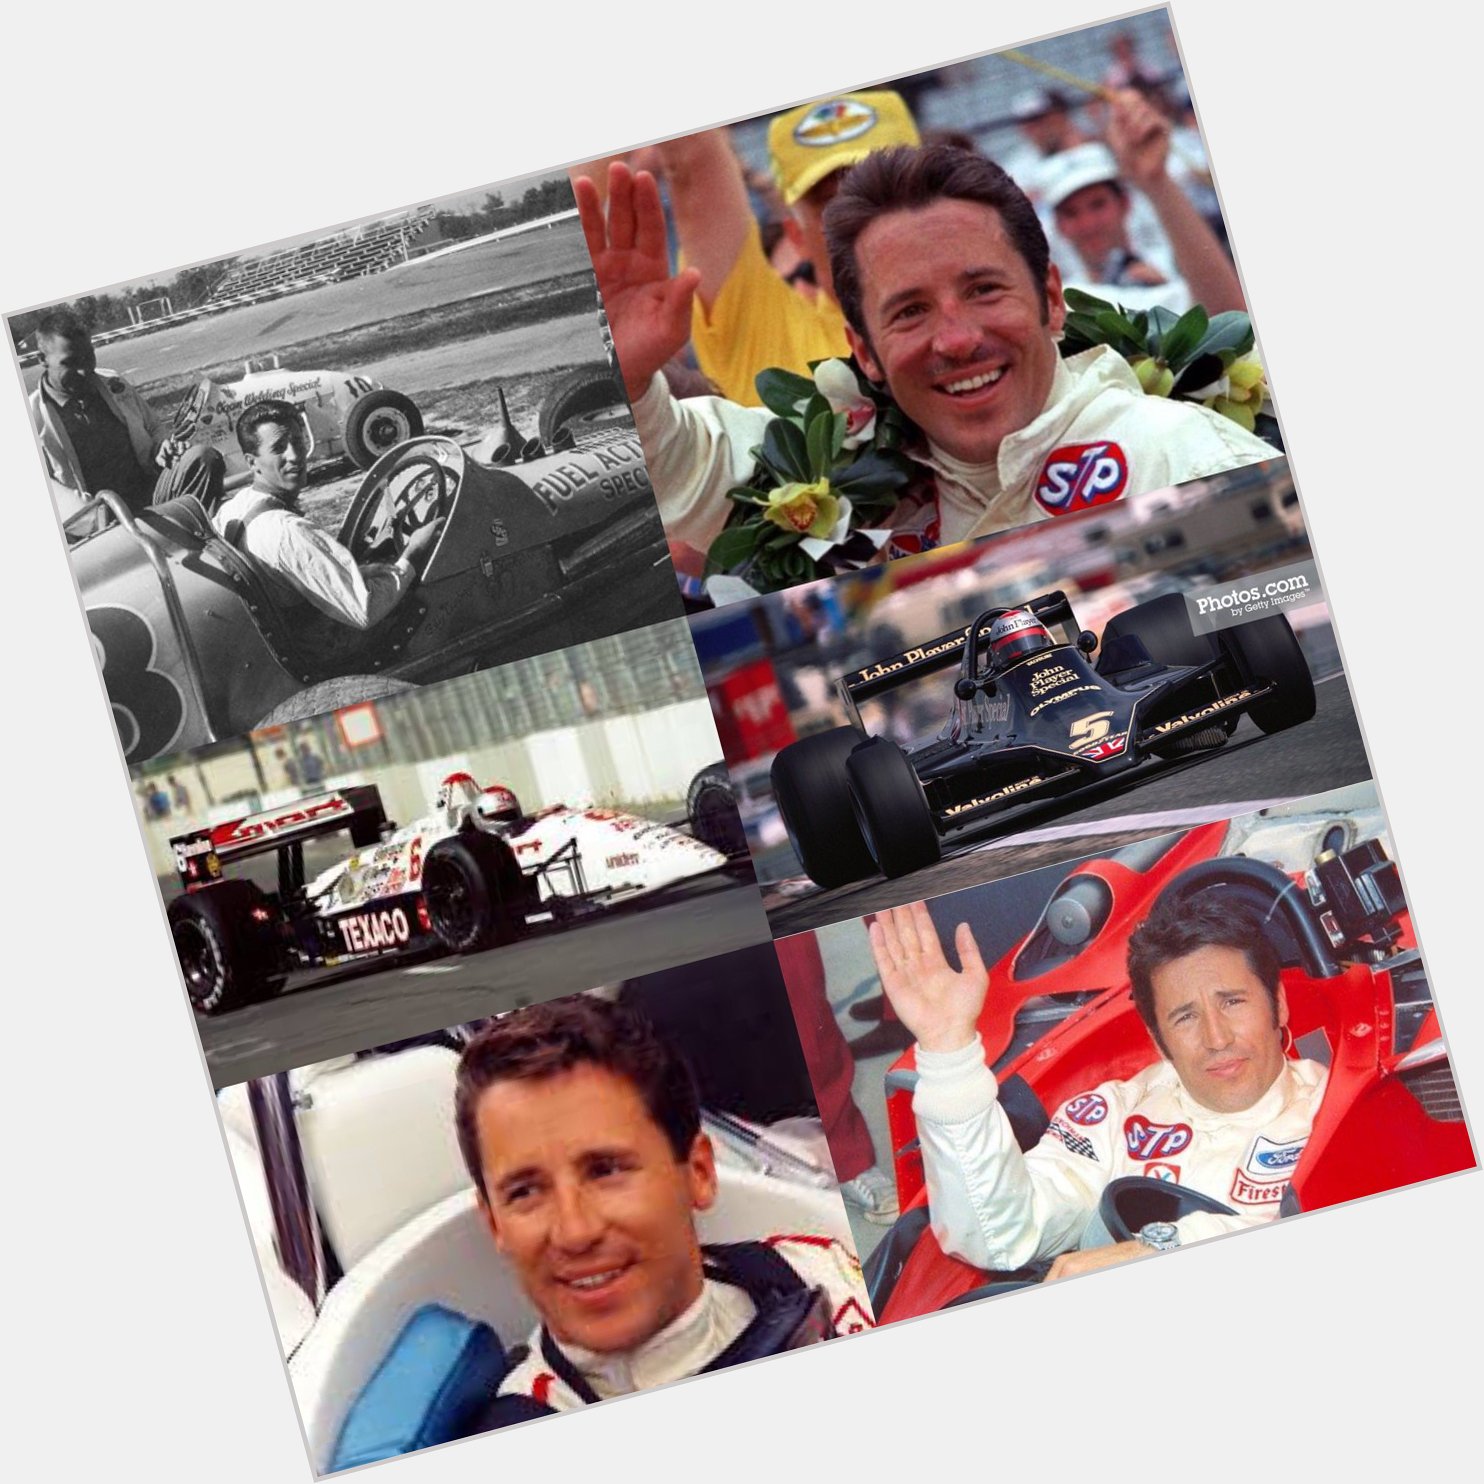 Happy Birthday Mario Andretti!  